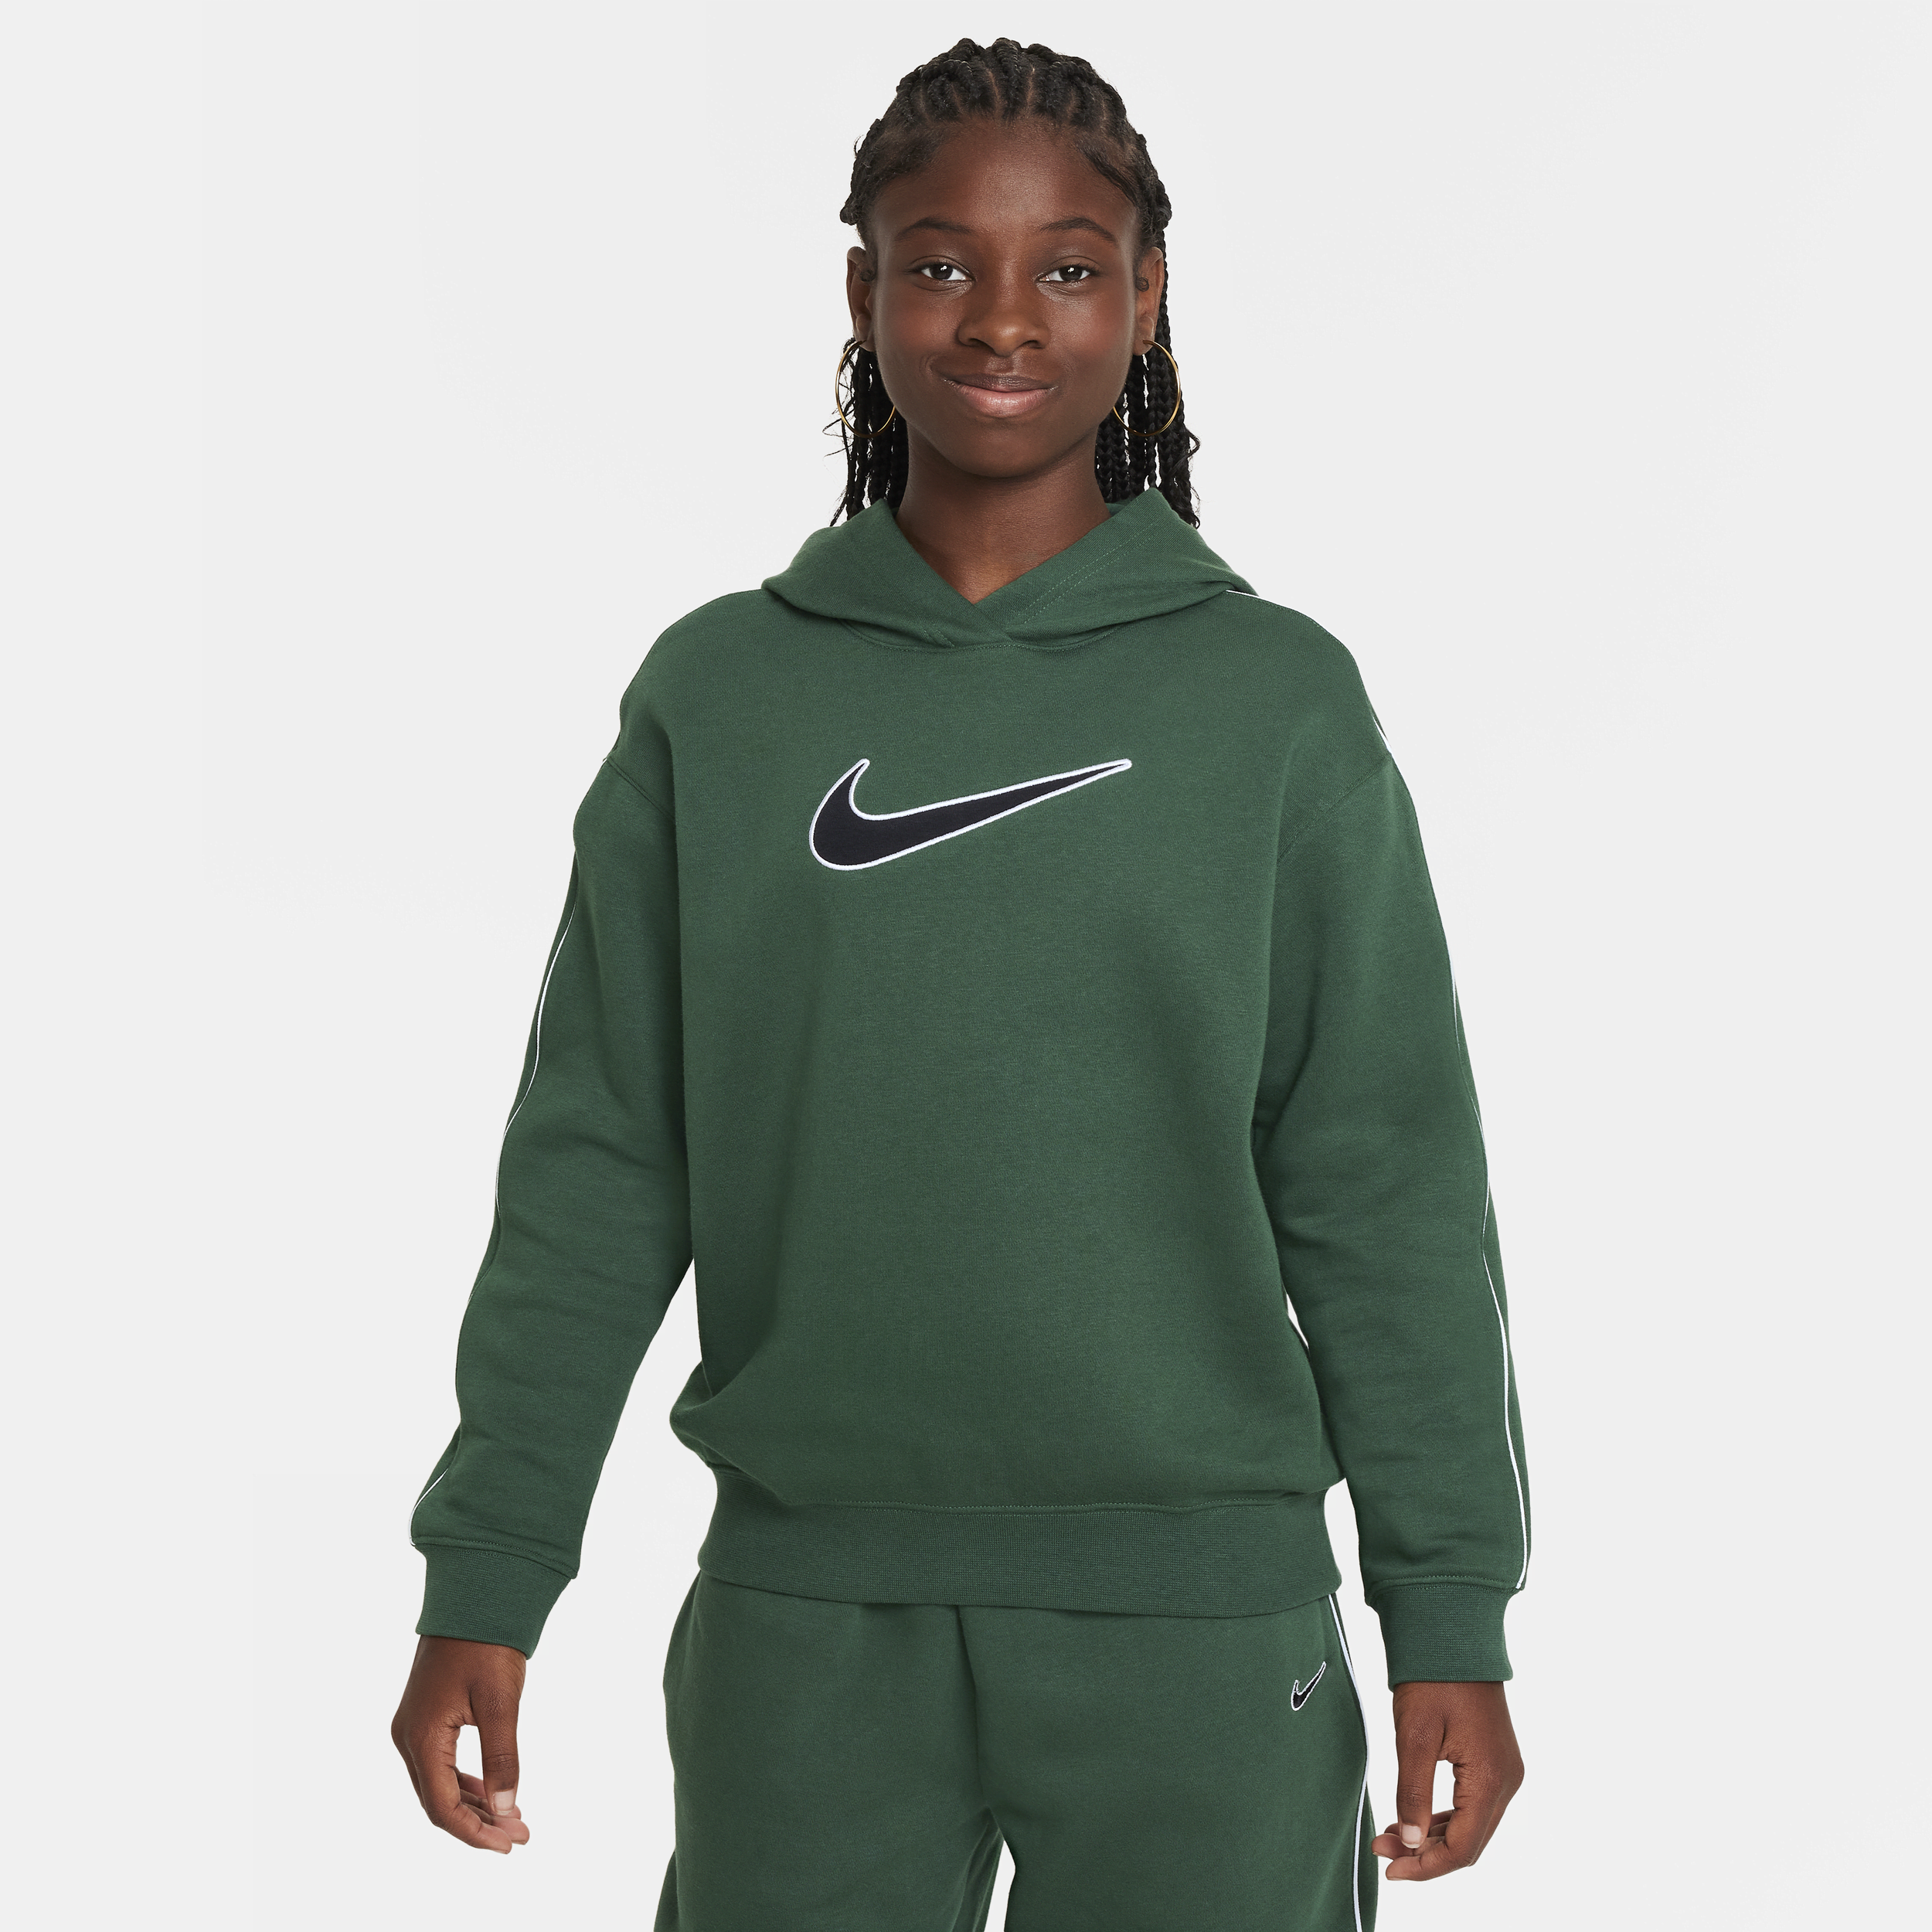 Oversized Nike Sportswear-pullover-hættetrøje i fleece til større børn (piger) - grøn